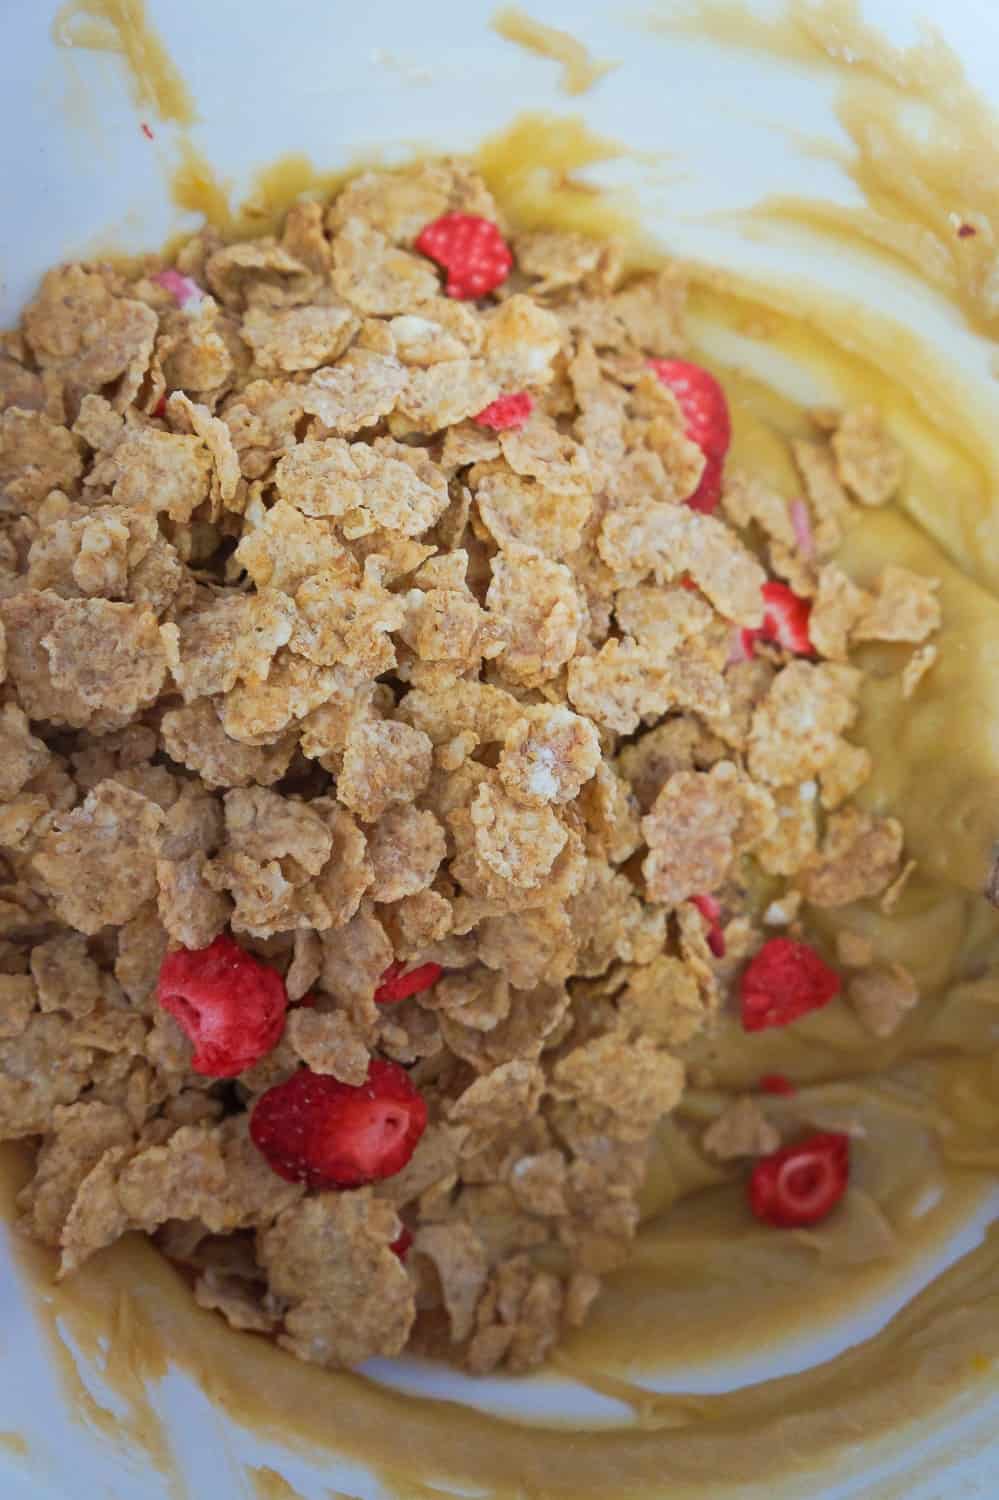 special K red berries cereal in blondie batter